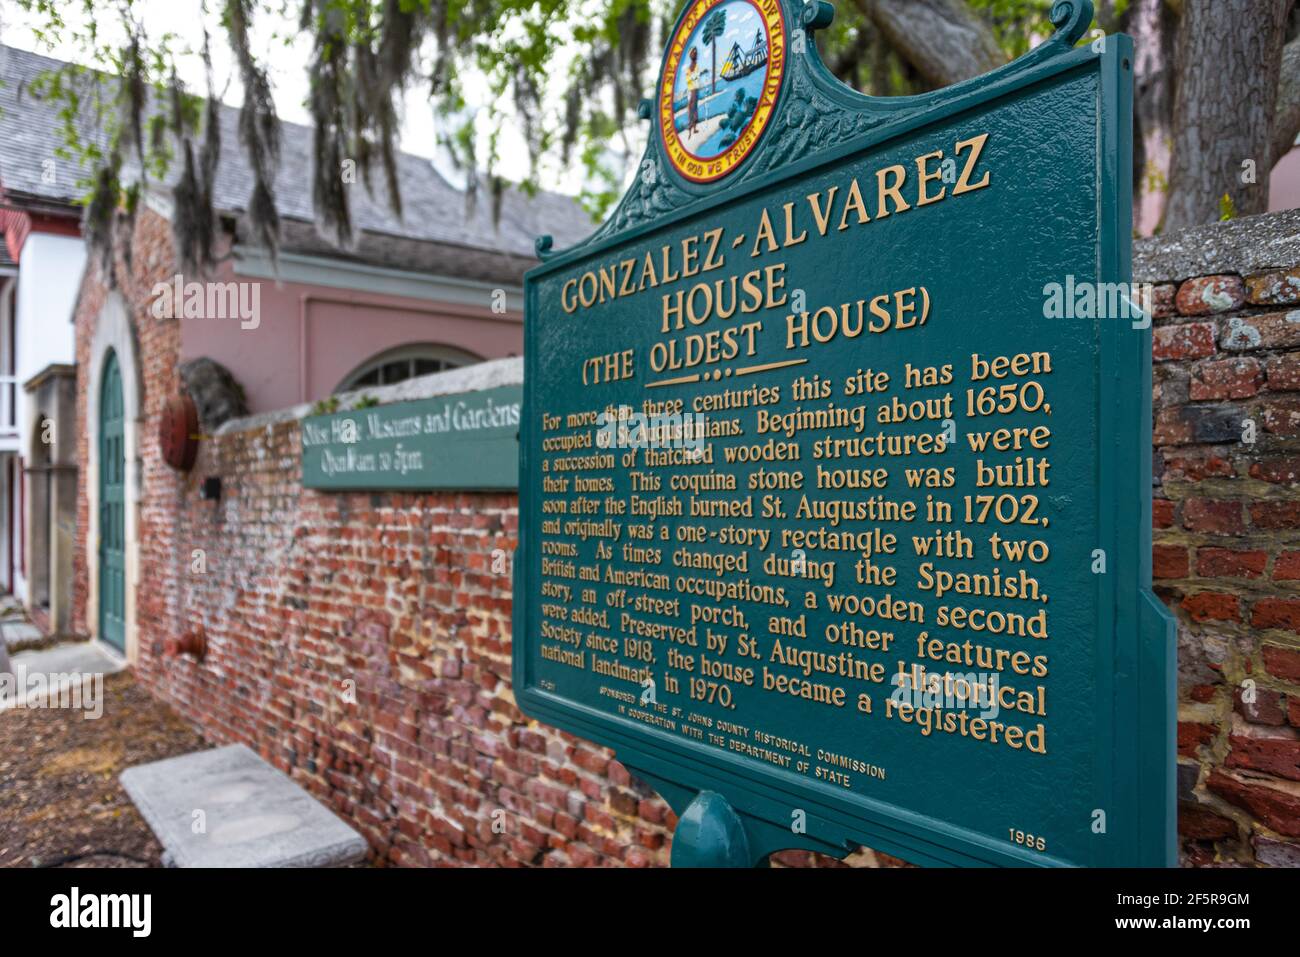 La casa Gonzalez-Alverez (la più antica) è un punto di riferimento storico a St. Augustine, Florida, con una costruzione originale risalente al 1723 circa. (STATI UNITI) Foto Stock